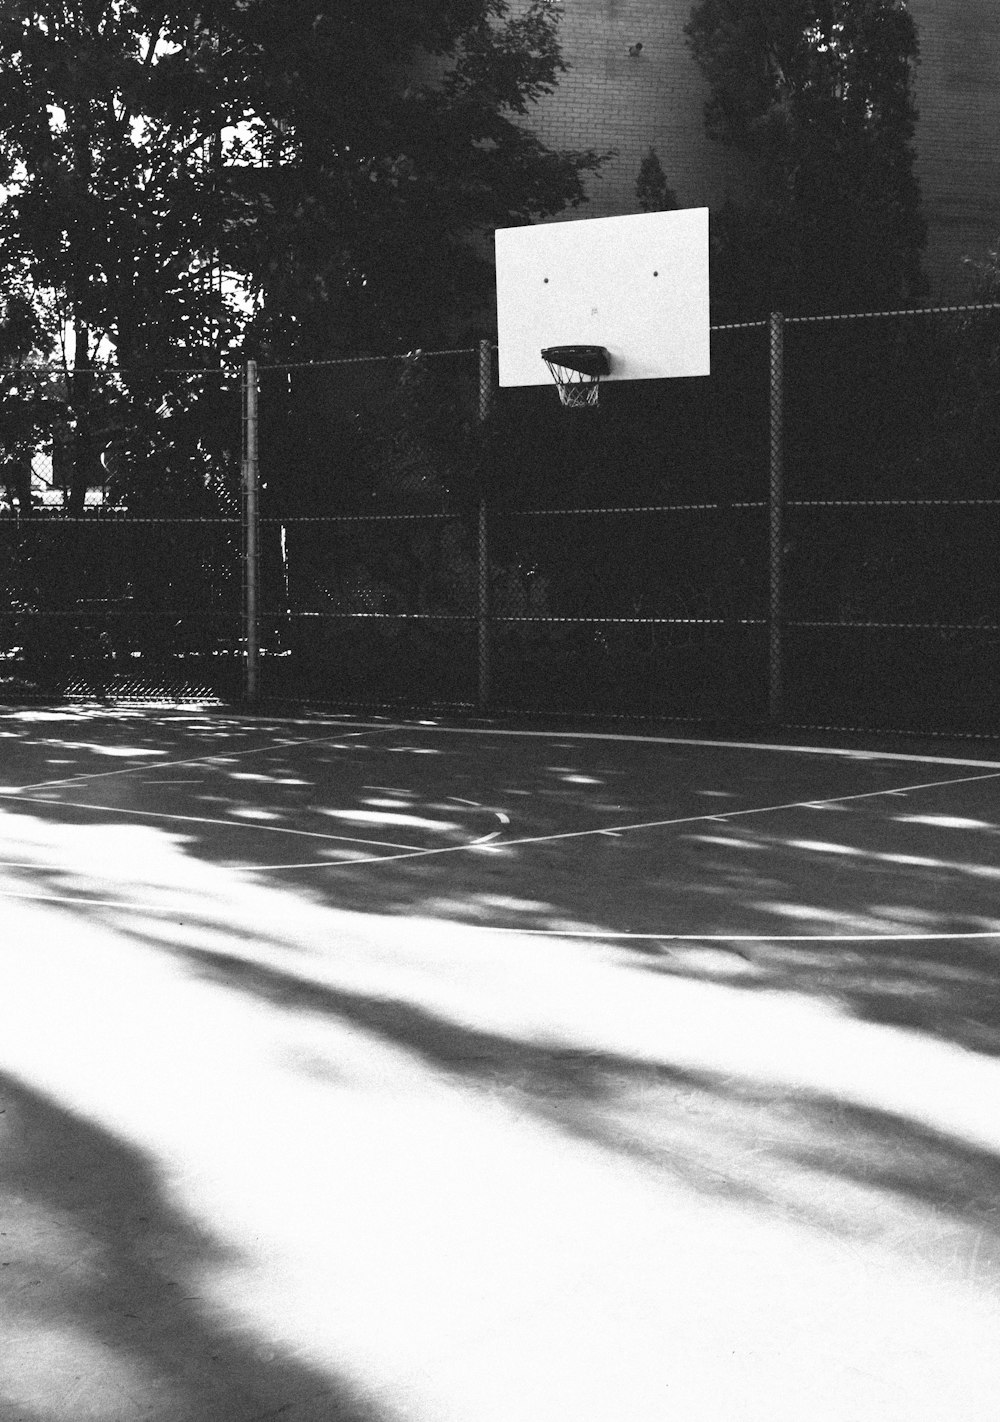 Aro de baloncesto blanco en cancha al aire libre